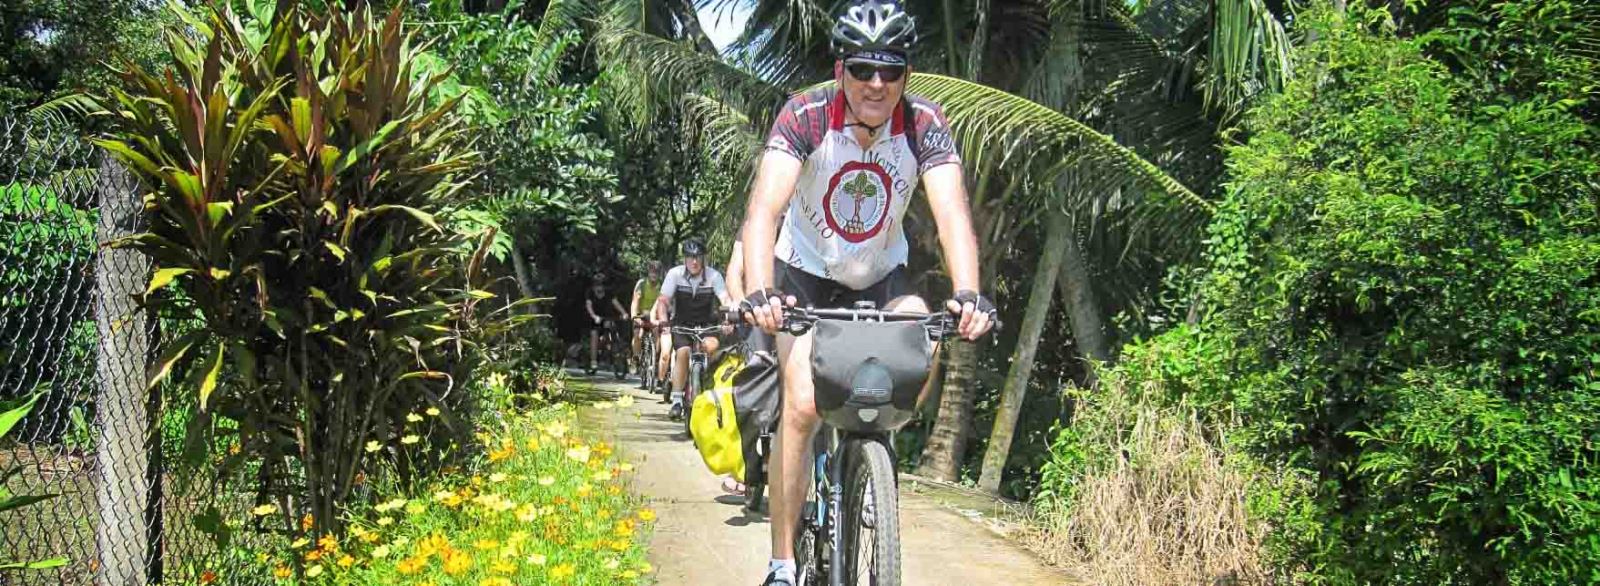 3. Il giro in bicicletta sull'isola di Tan Phong - Cai Be